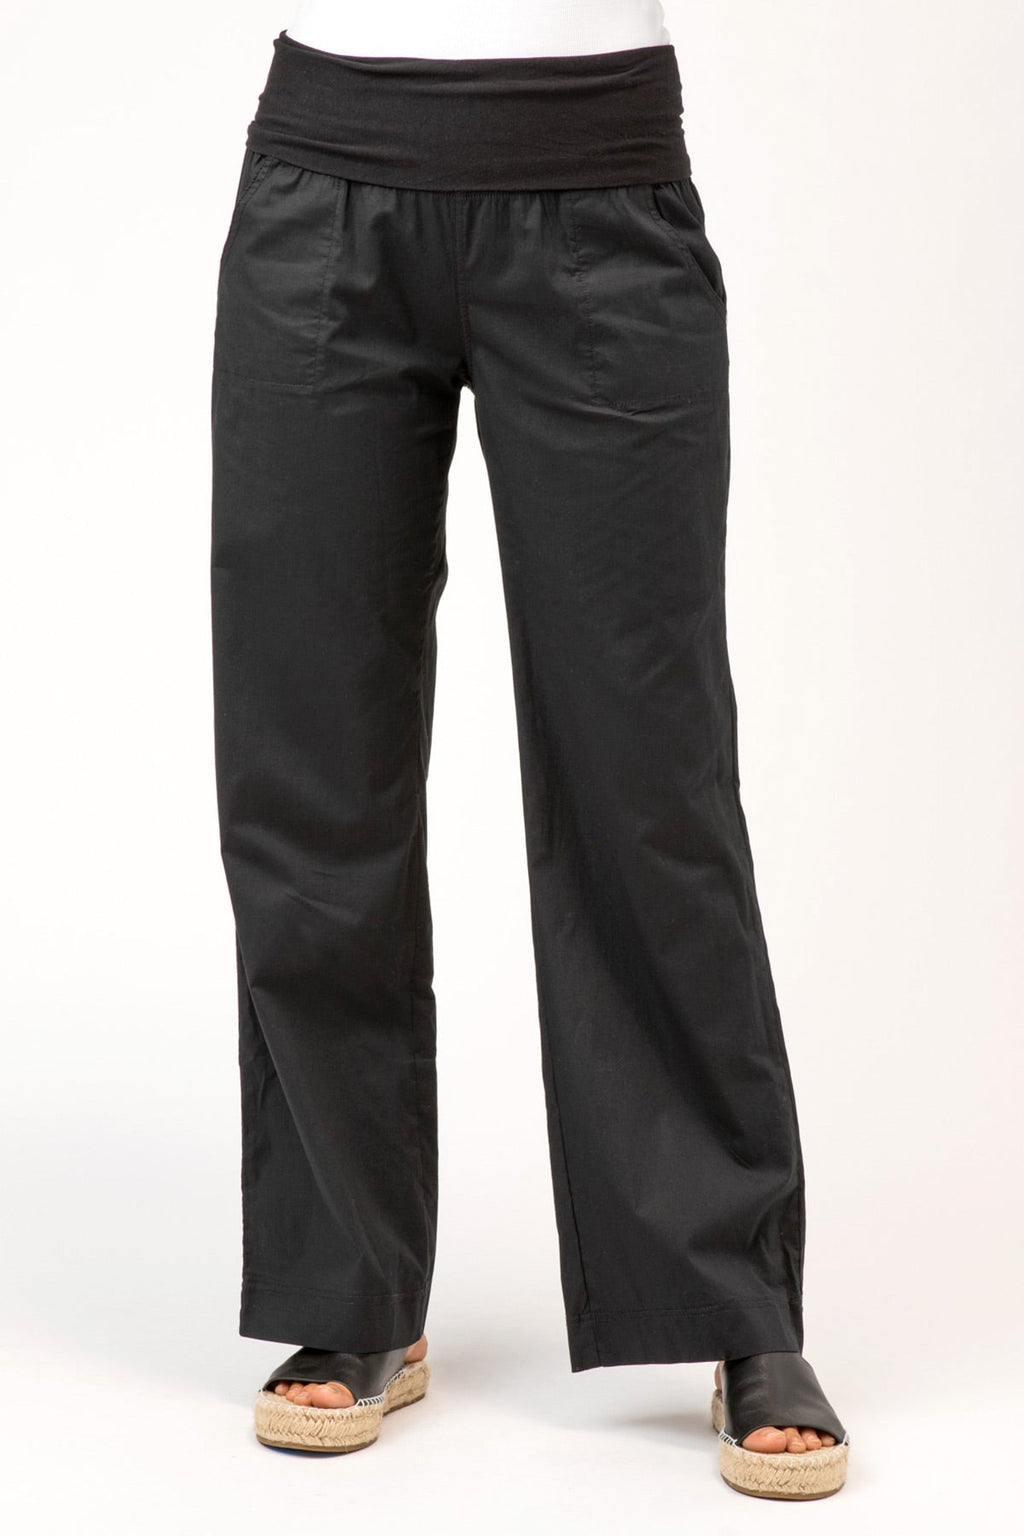 4-Pocket Fold Over Pant in Black – XCVI